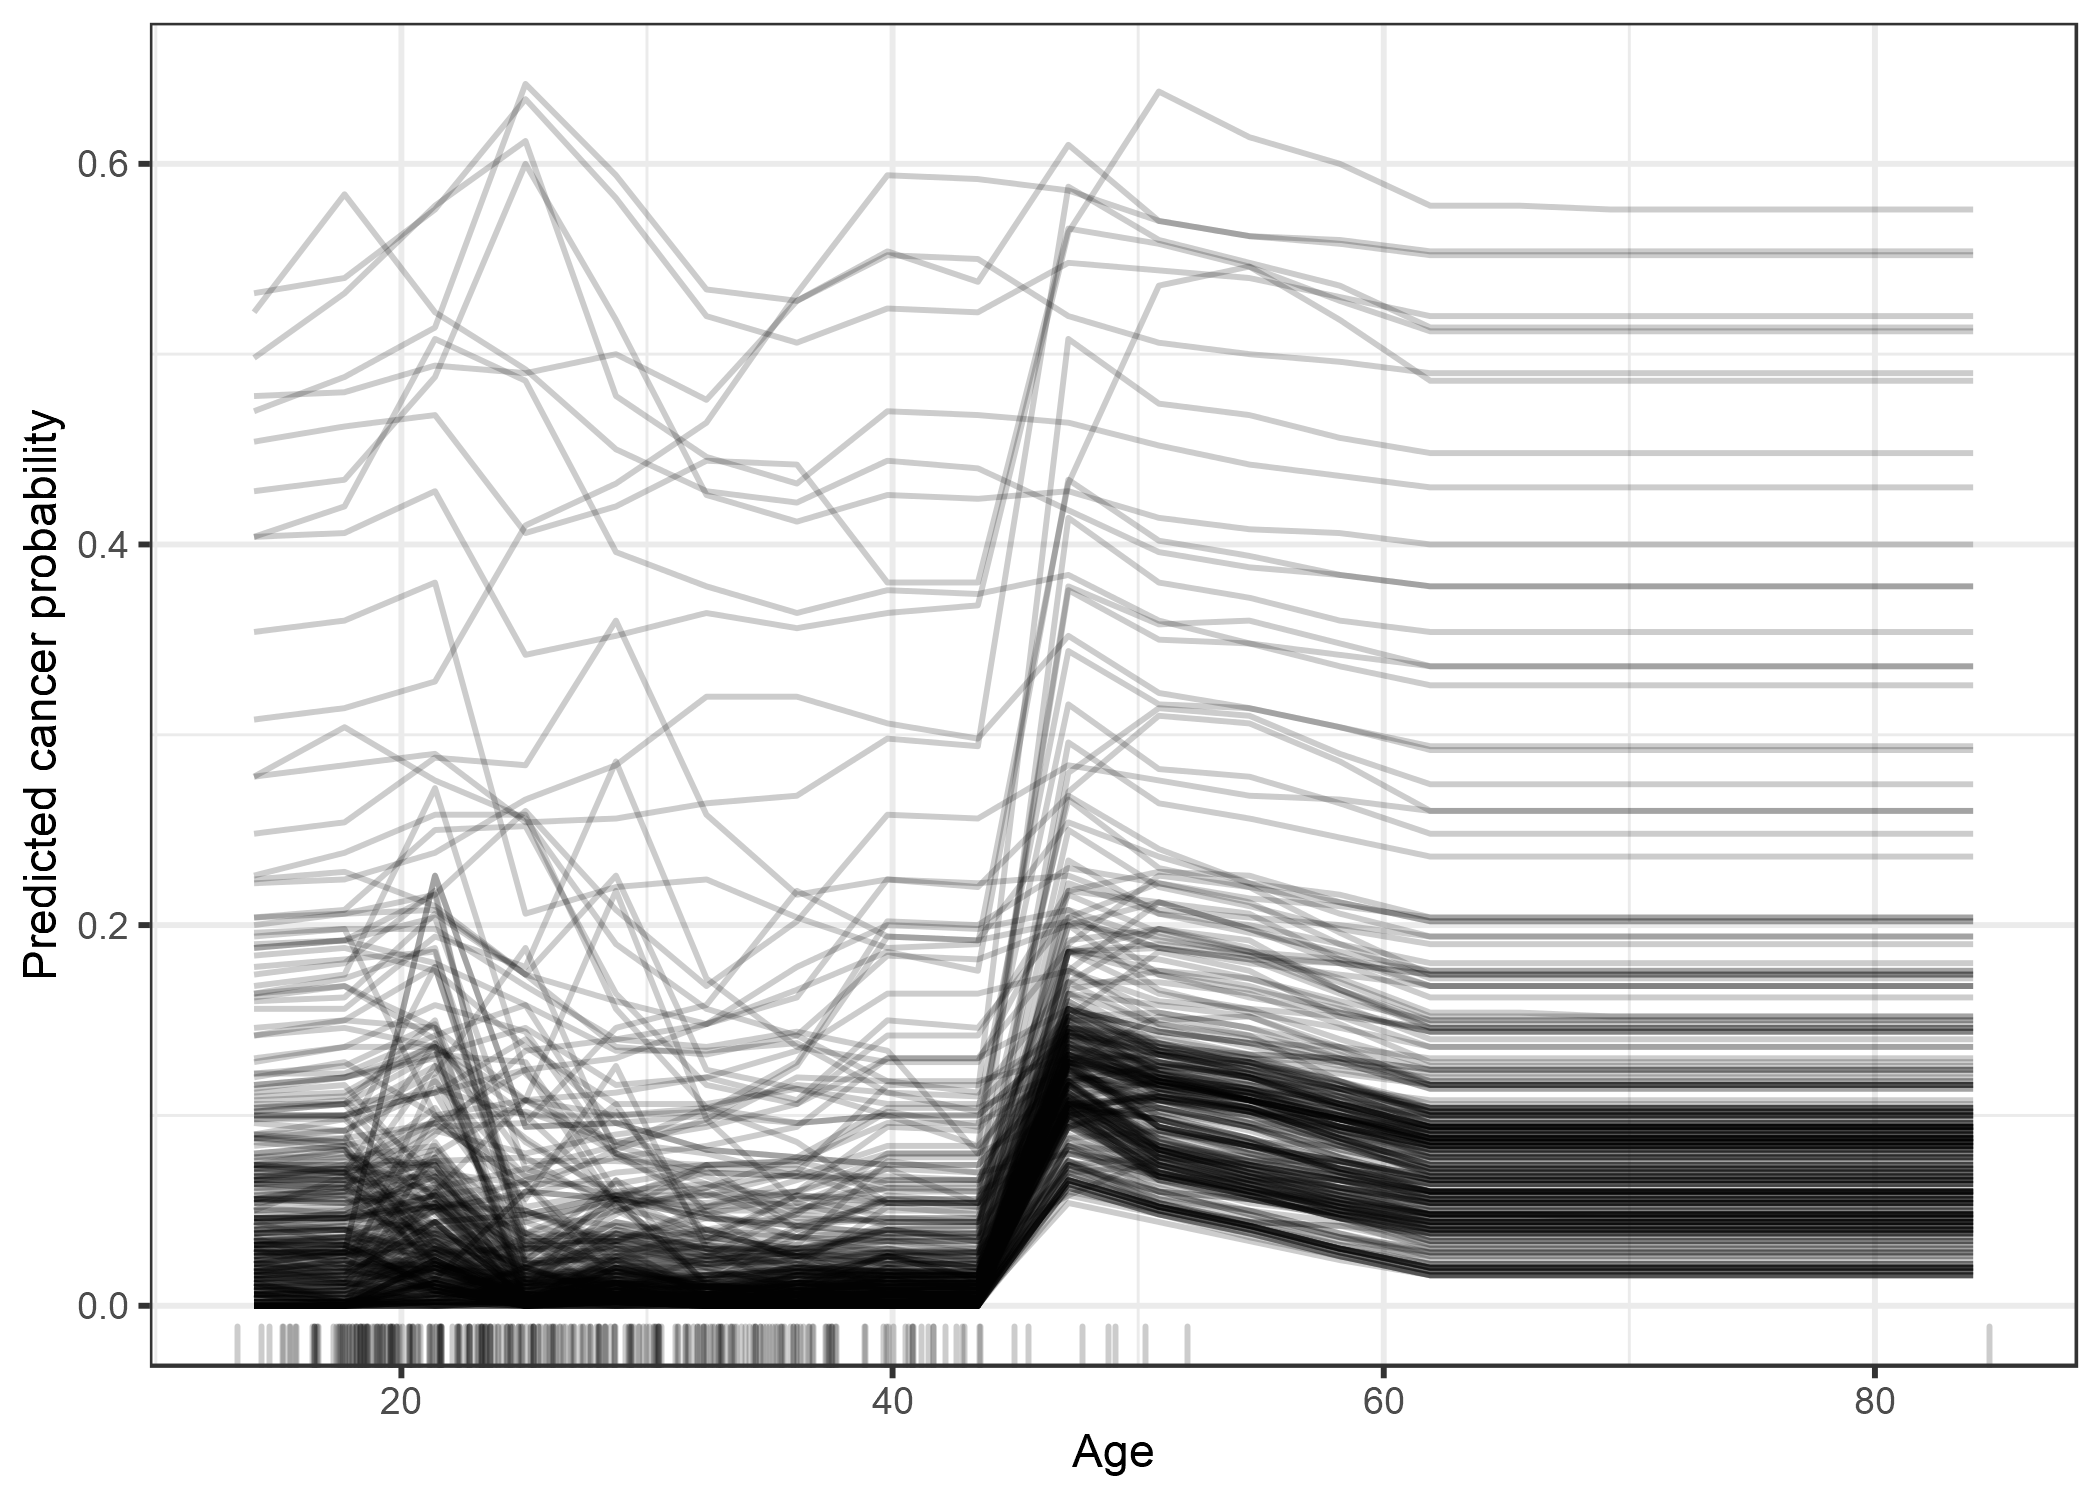 Gráfico ICE de probabilidad de cáncer cervical por edad. Cada línea representa a una mujer. Para la mayoría de las mujeres hay un aumento en la probabilidad pronosticada de cáncer al aumentar la edad. Para algunas mujeres con un pronóstico probabilidad de cáncer por encima de 0.4, la predicción no cambia mucho a mayor edad.